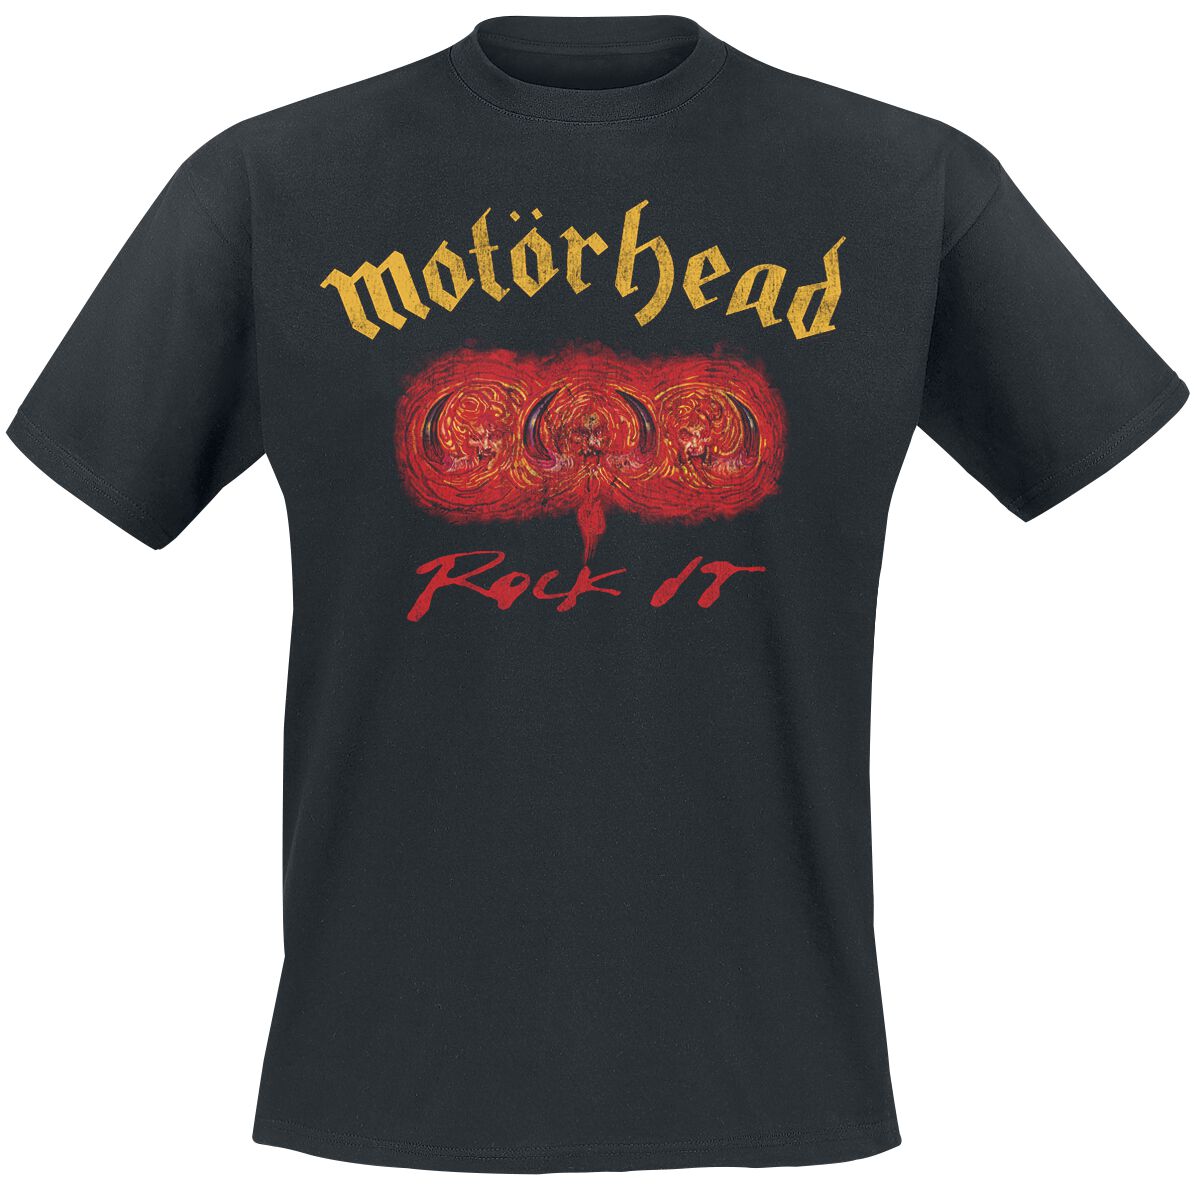 Motörhead T-Shirt - Rock It - S bis 3XL - für Männer - Größe S - schwarz  - Lizenziertes Merchandise!